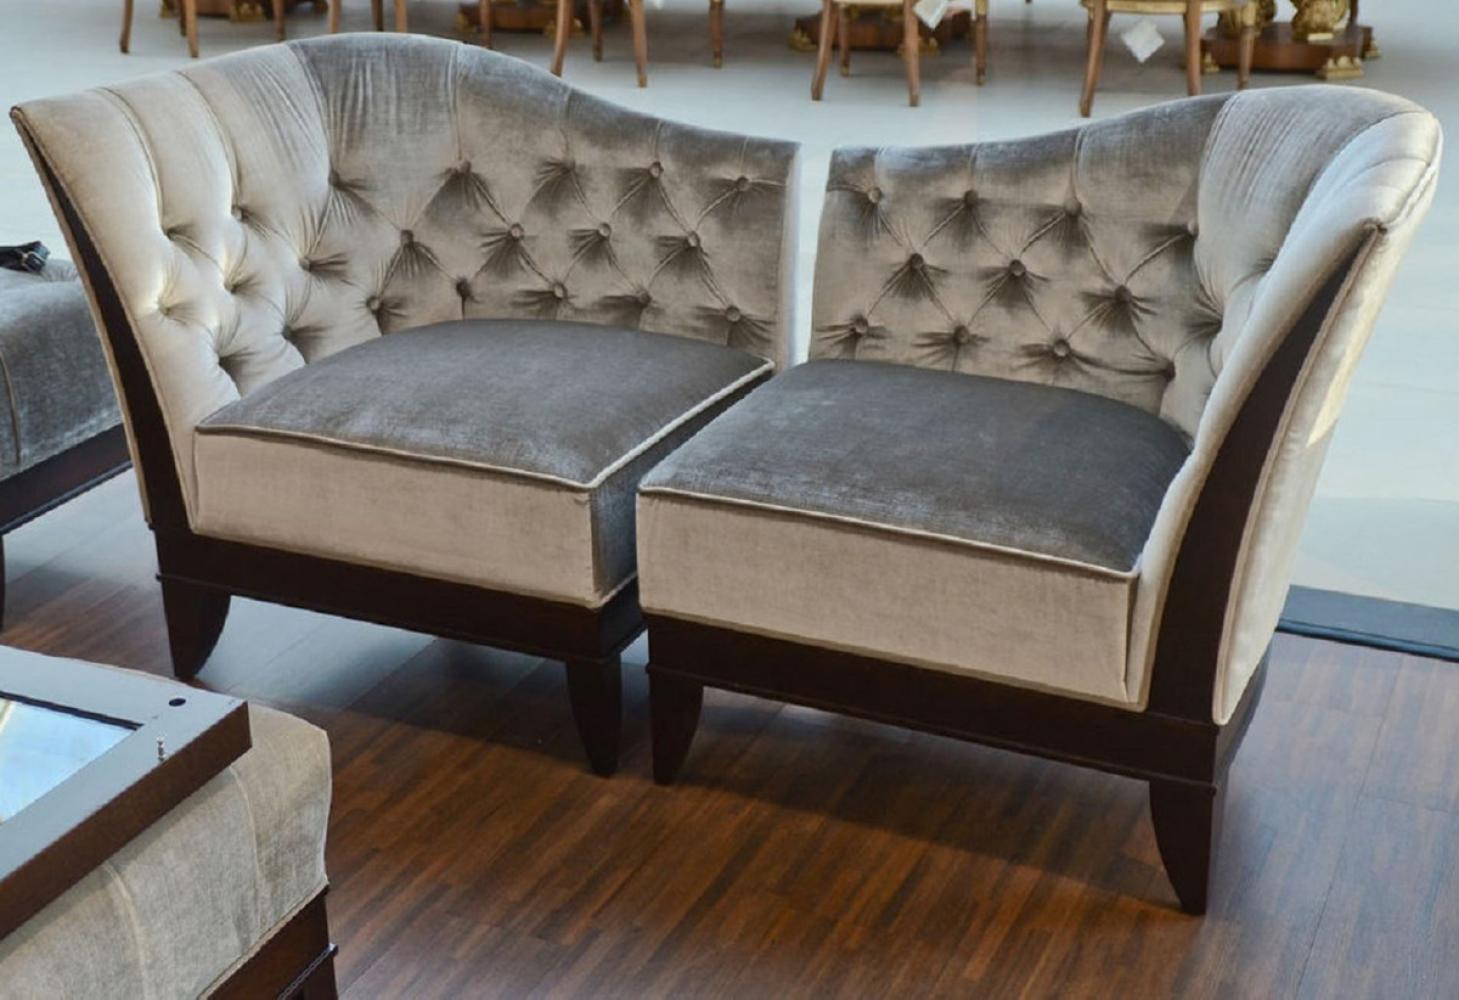 Casa Padrino Luxus Wohnzimmer Sessel Set Silbergrau / Dunkelbraun - 2 Neoklassische Sessel mit edlem Velourstoff - Wohnzimmer Möbel im Neoklassischem Stil Bild 1